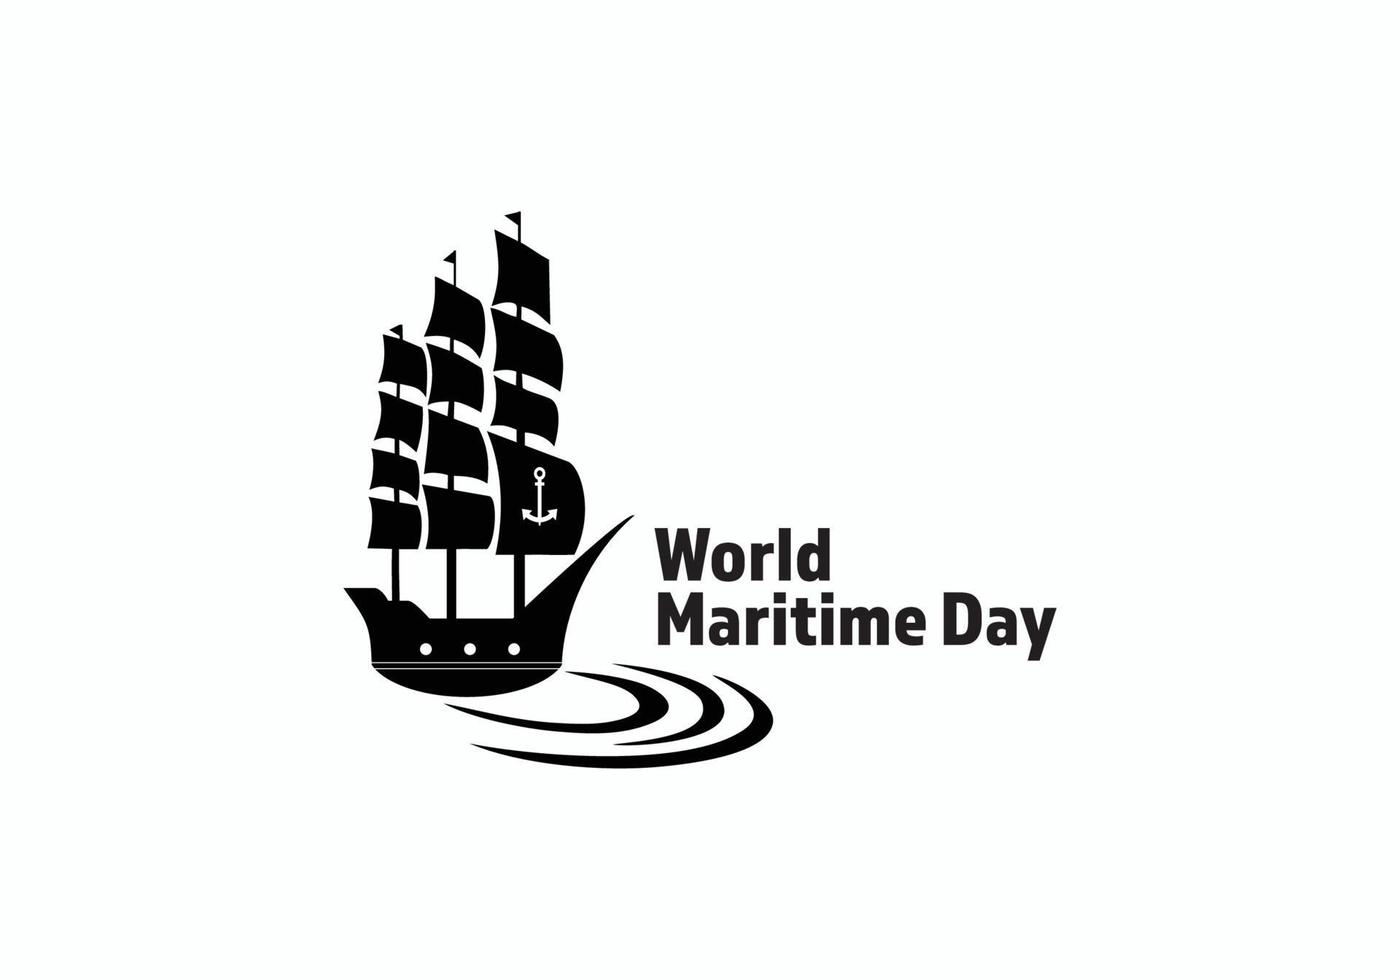 símbolo do dia marítimo mundial com inspiração de design de logotipo de onda e veleiro. vetor